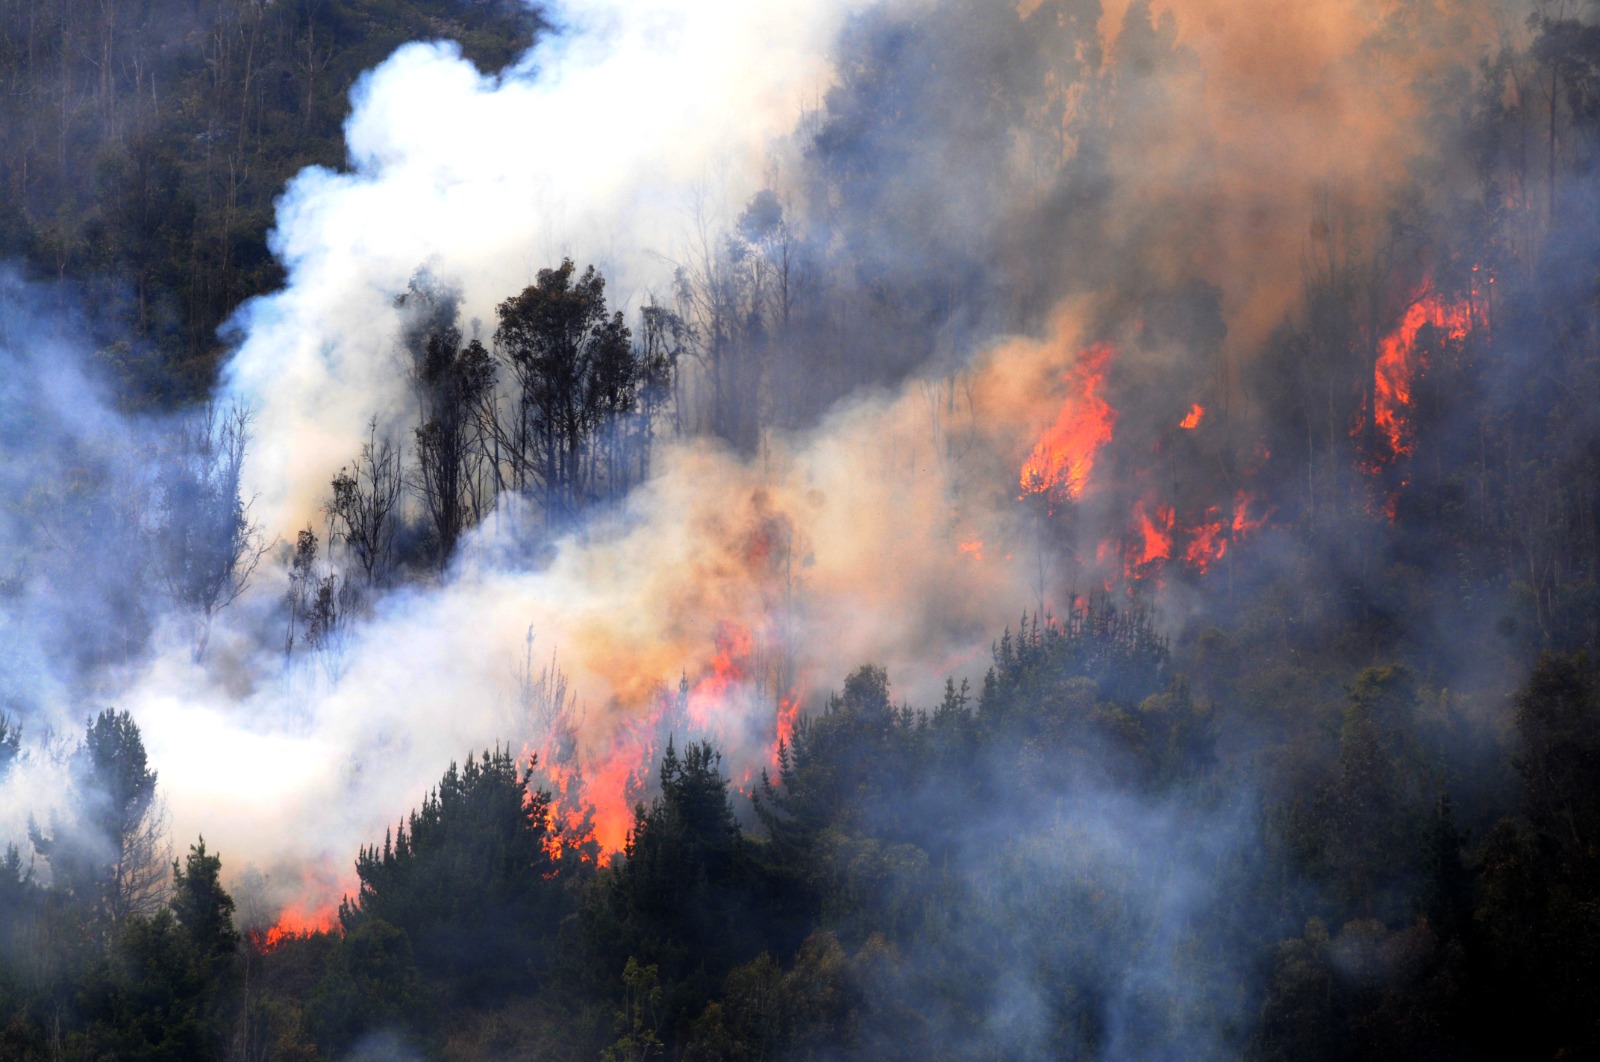 Gobierno cundinamarqués atiende emergencias causadas por incendios forestales

